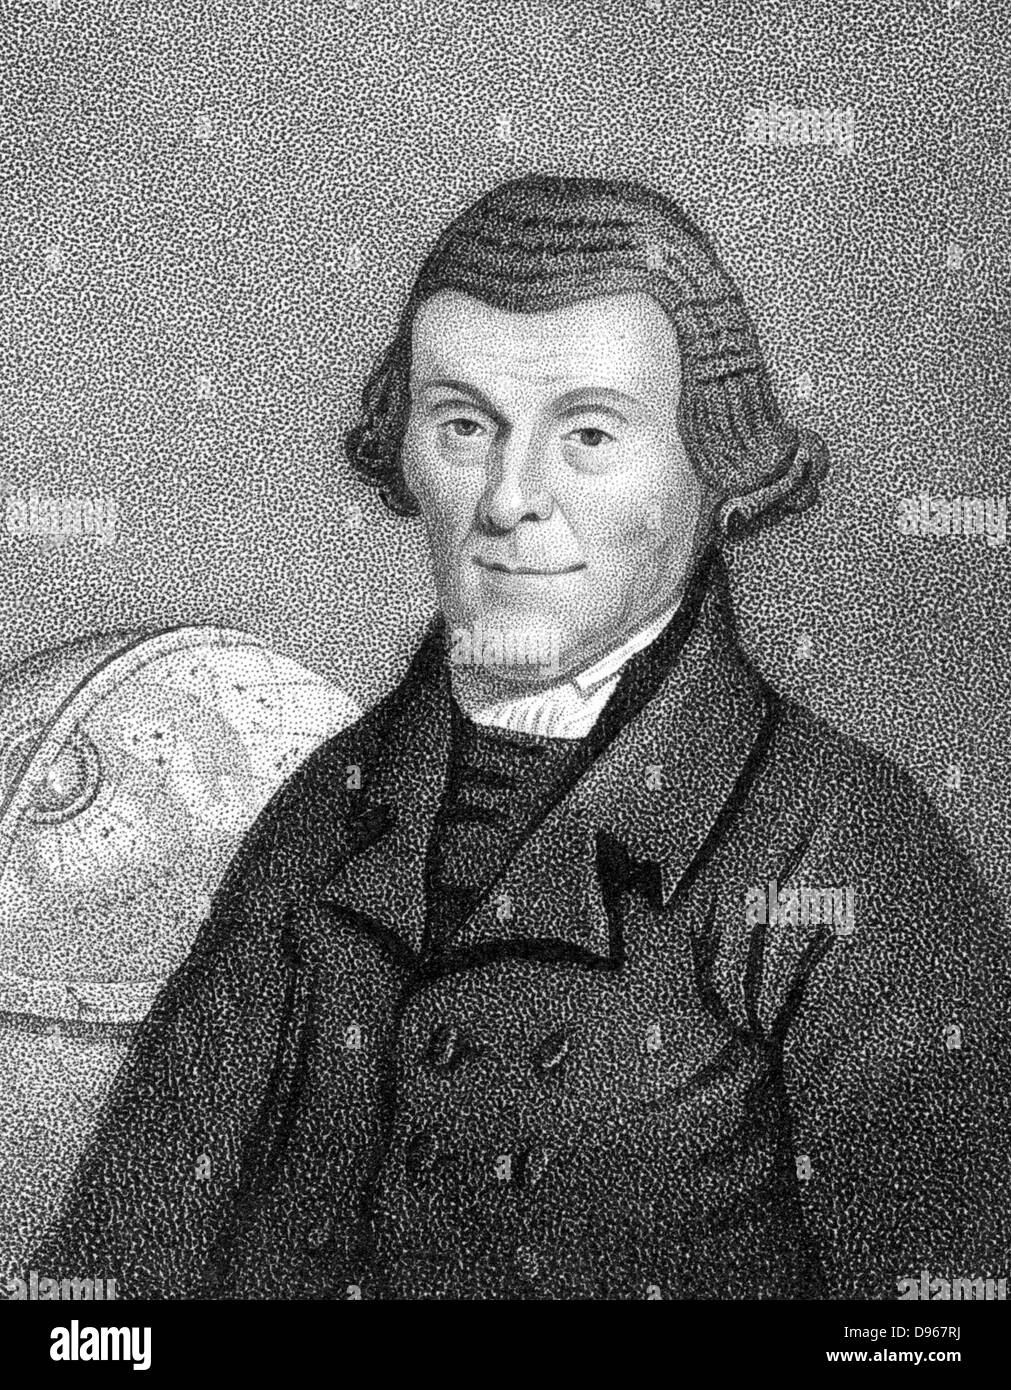 Henry Andrews (1744-1820), maître d'anglais Calculatrice astronomique, auteur de 'Moore's Almanack'. Frieston né près de Grantham Lincolnshire. Gravure crépi Banque D'Images